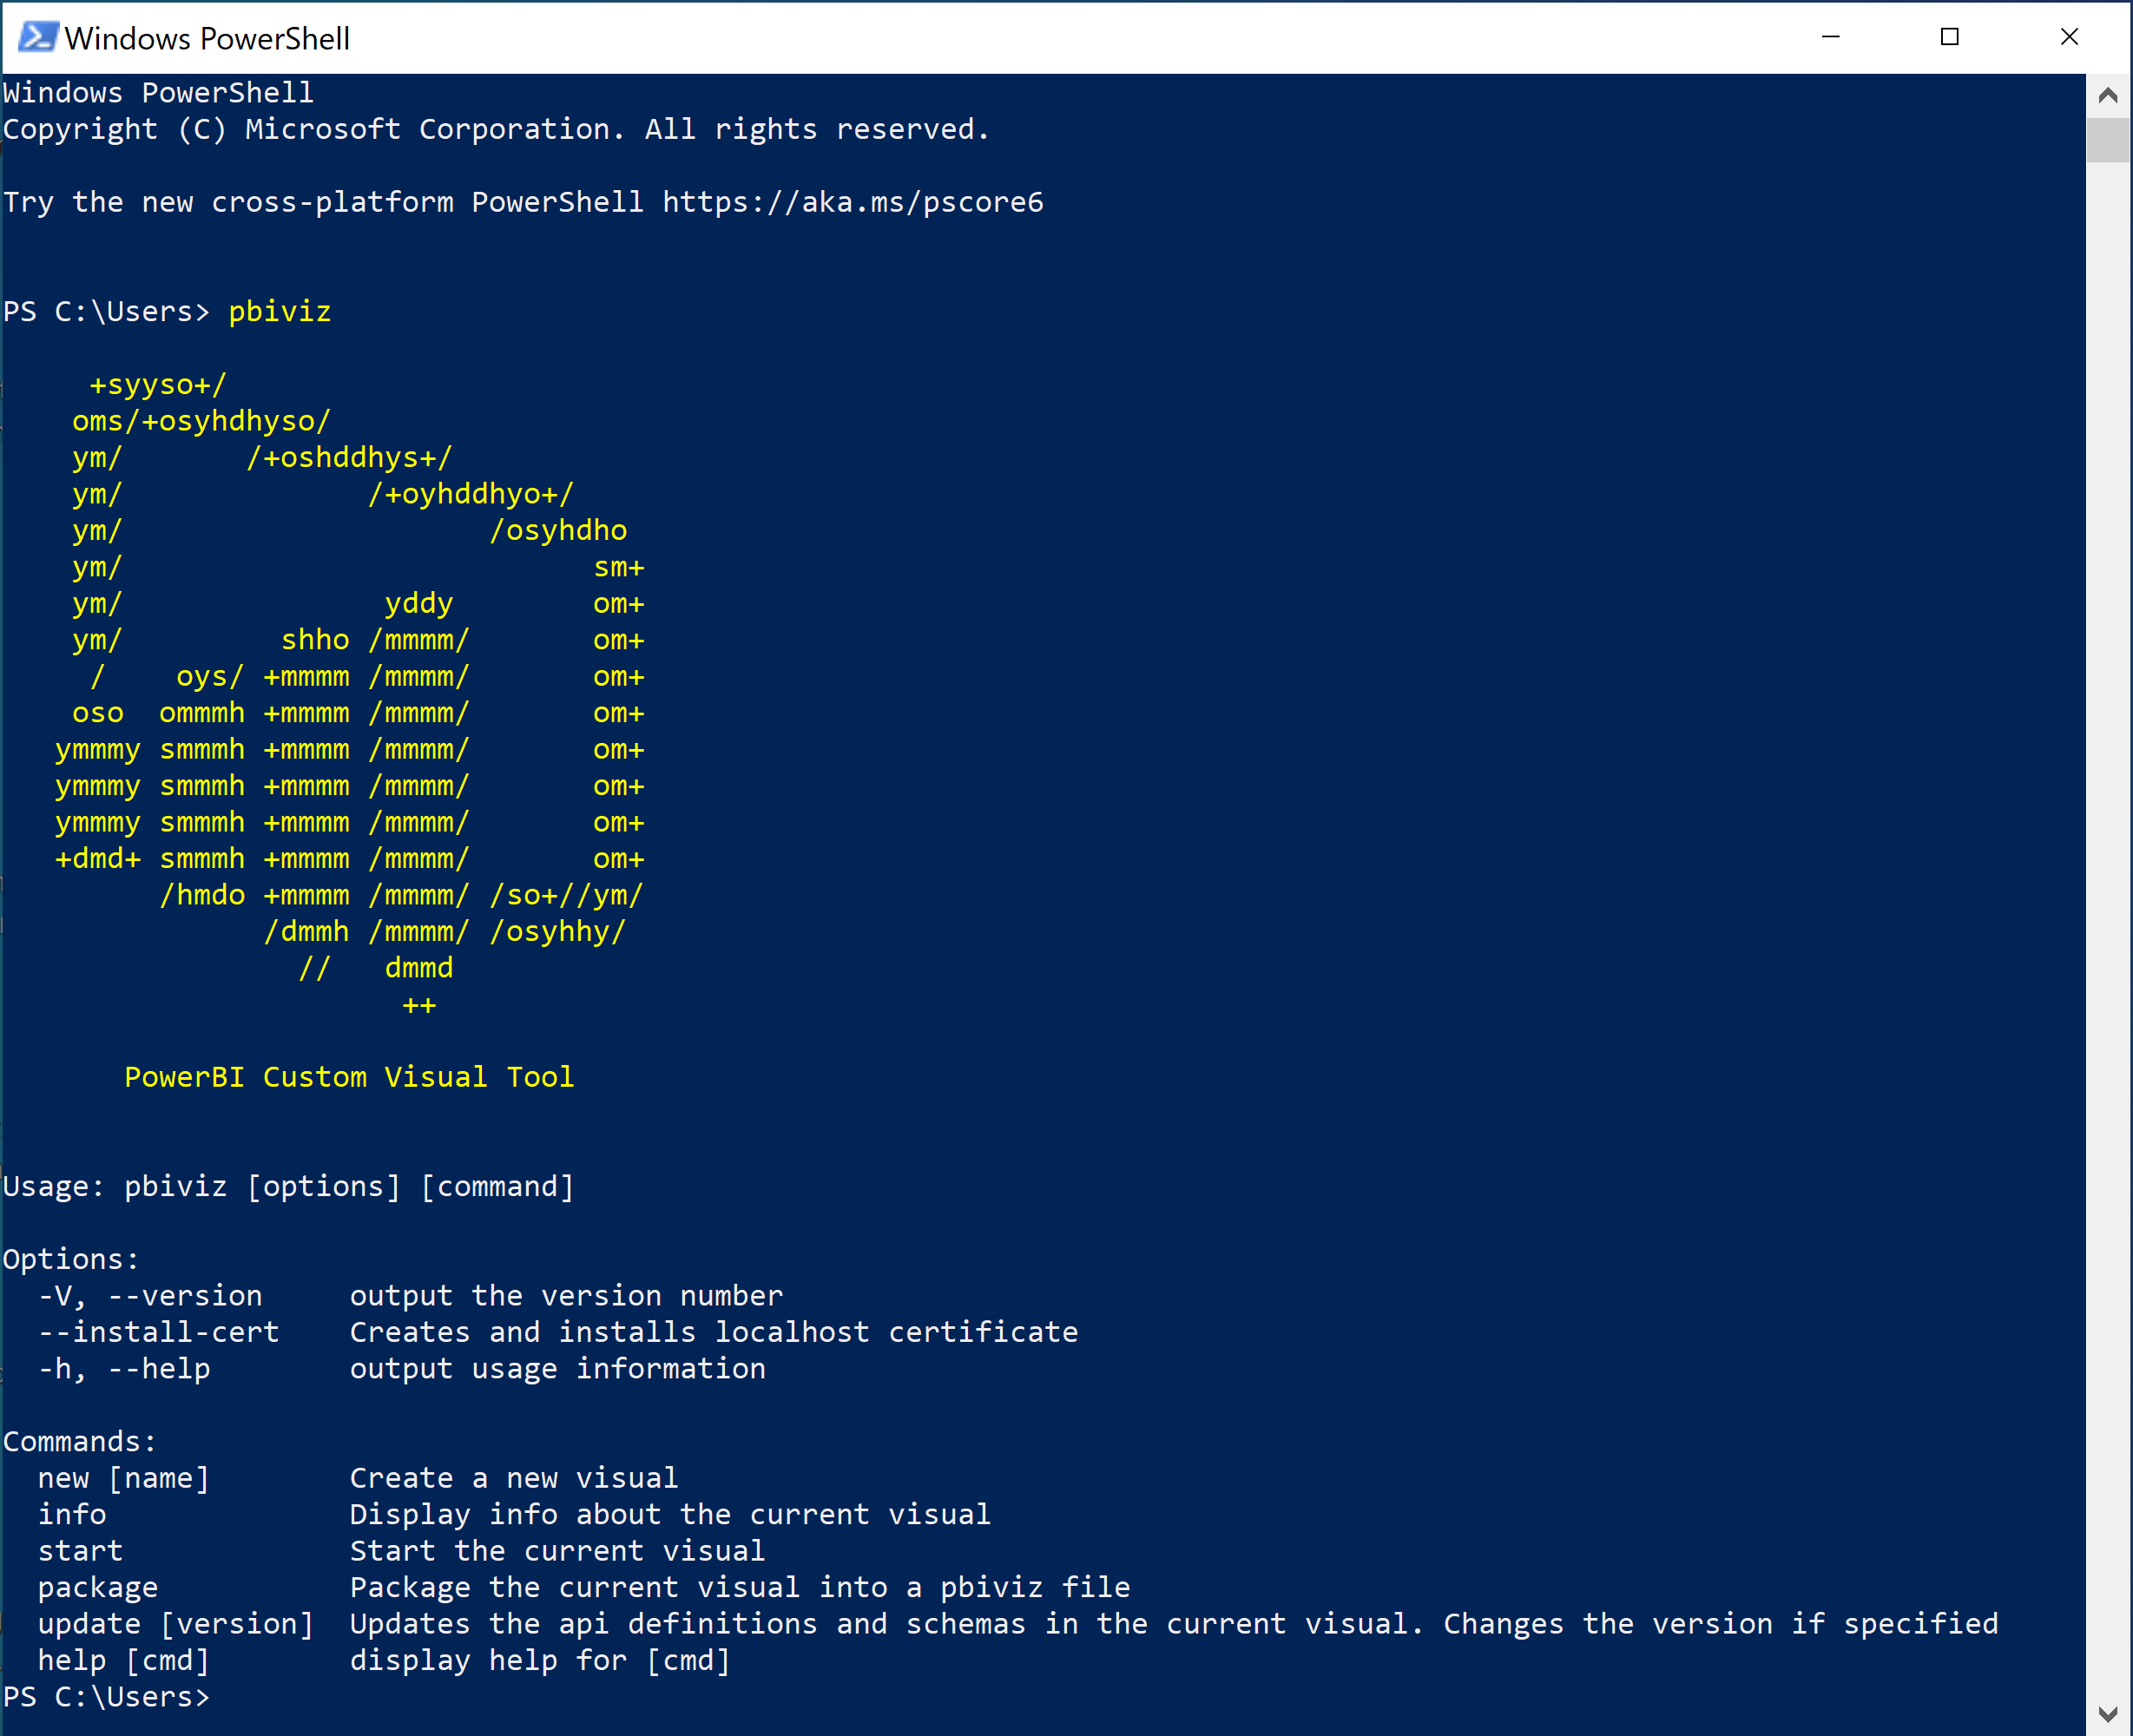 Captura de tela da saída da execução do comando p b i viz no PowerShell.